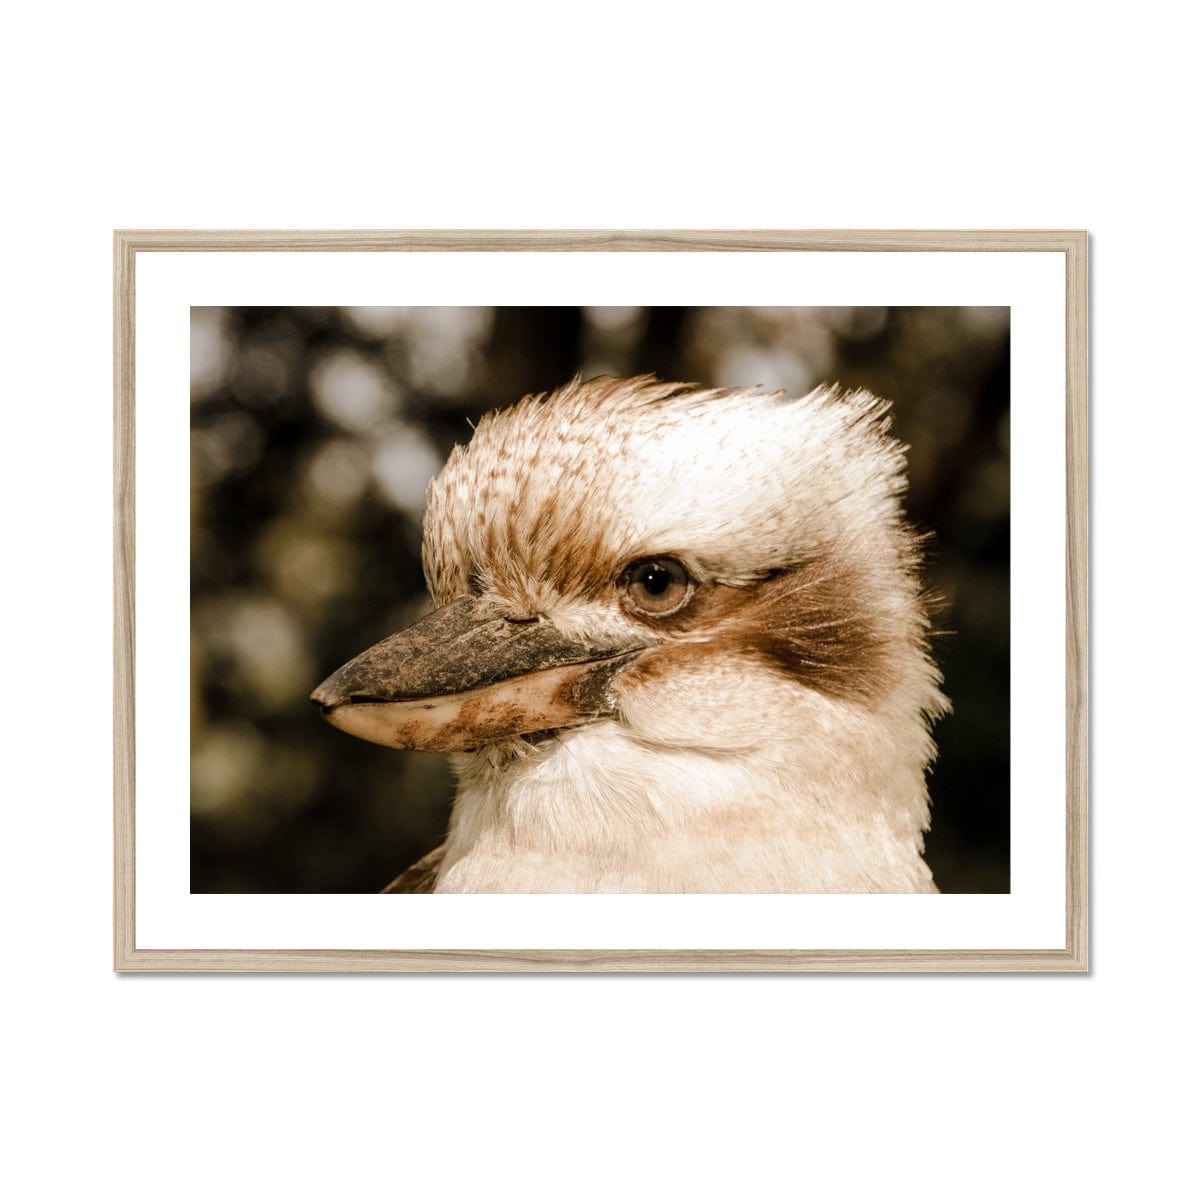 Seek & Ramble Framed 24"x18" (60.96x45.72cm) / Natural Frame Kookaburra Gaze Framed & Mounted Print